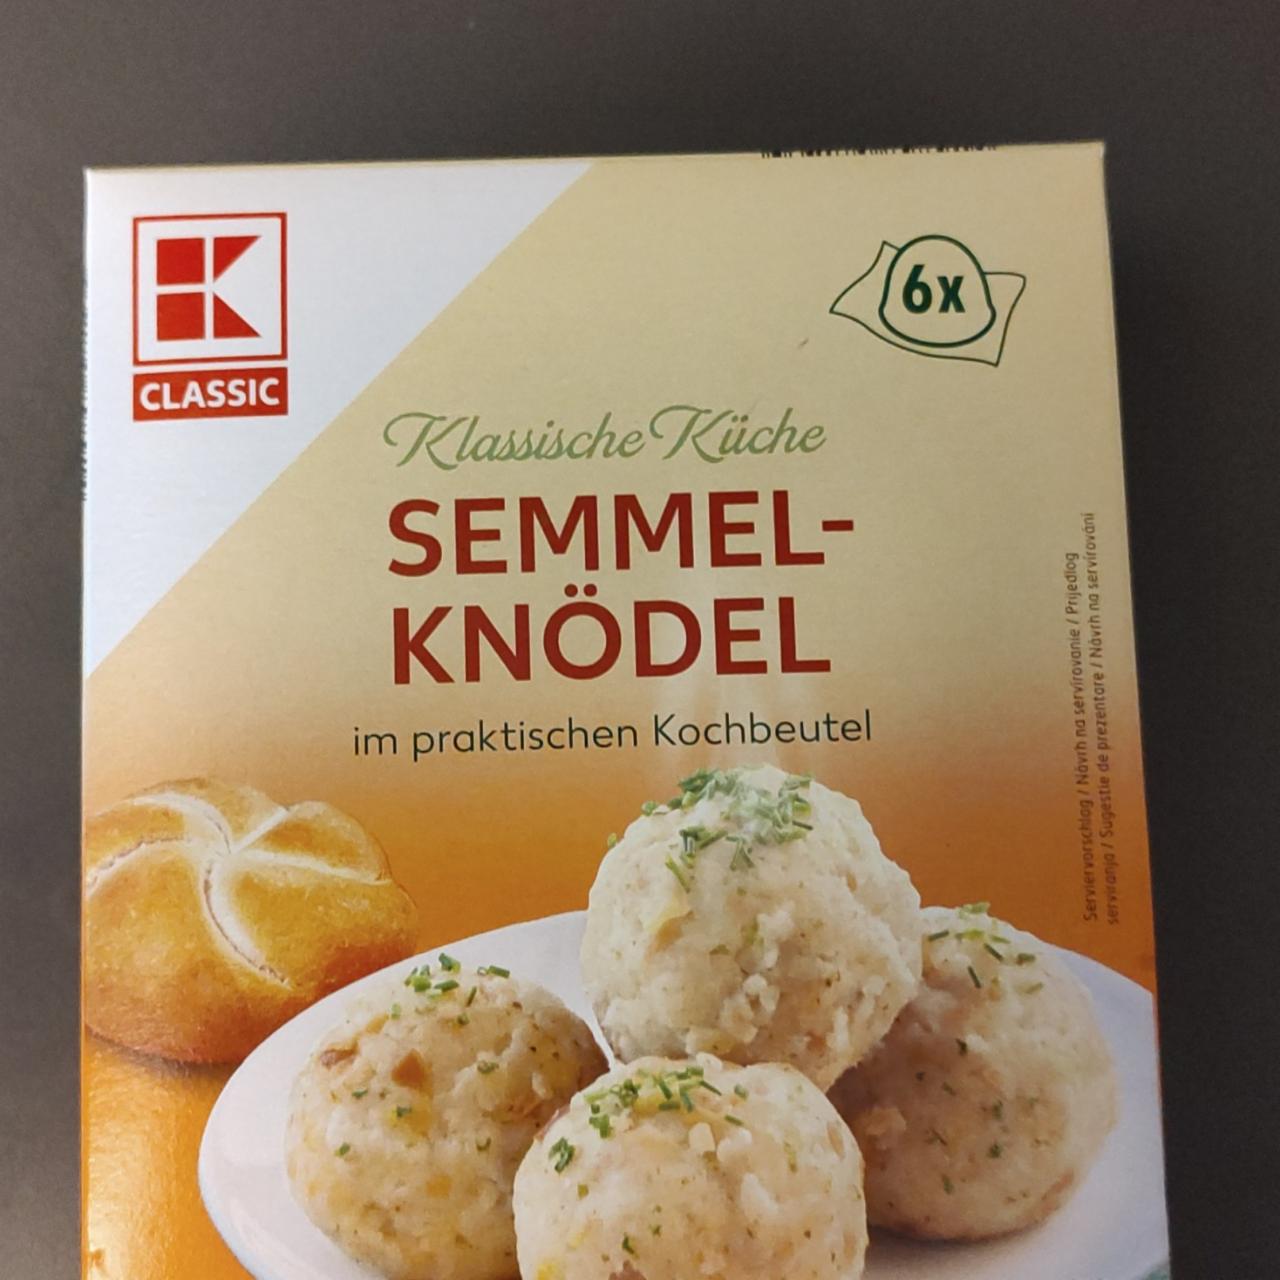 Fotografie - Semmel Knödel Klassische Küche im praktischen Kochbeutel K Classic